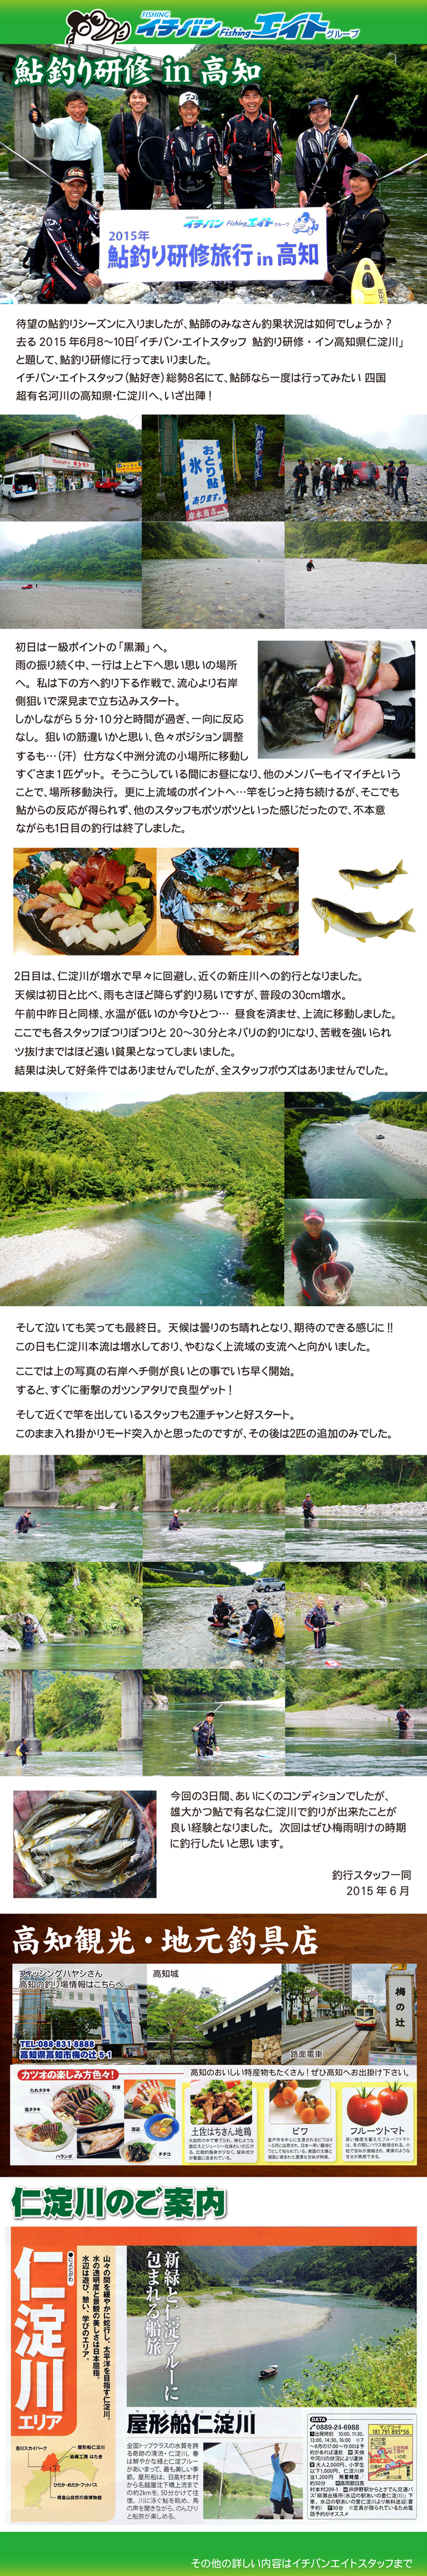 2015年6月 鮎釣り研修旅行 in 高知